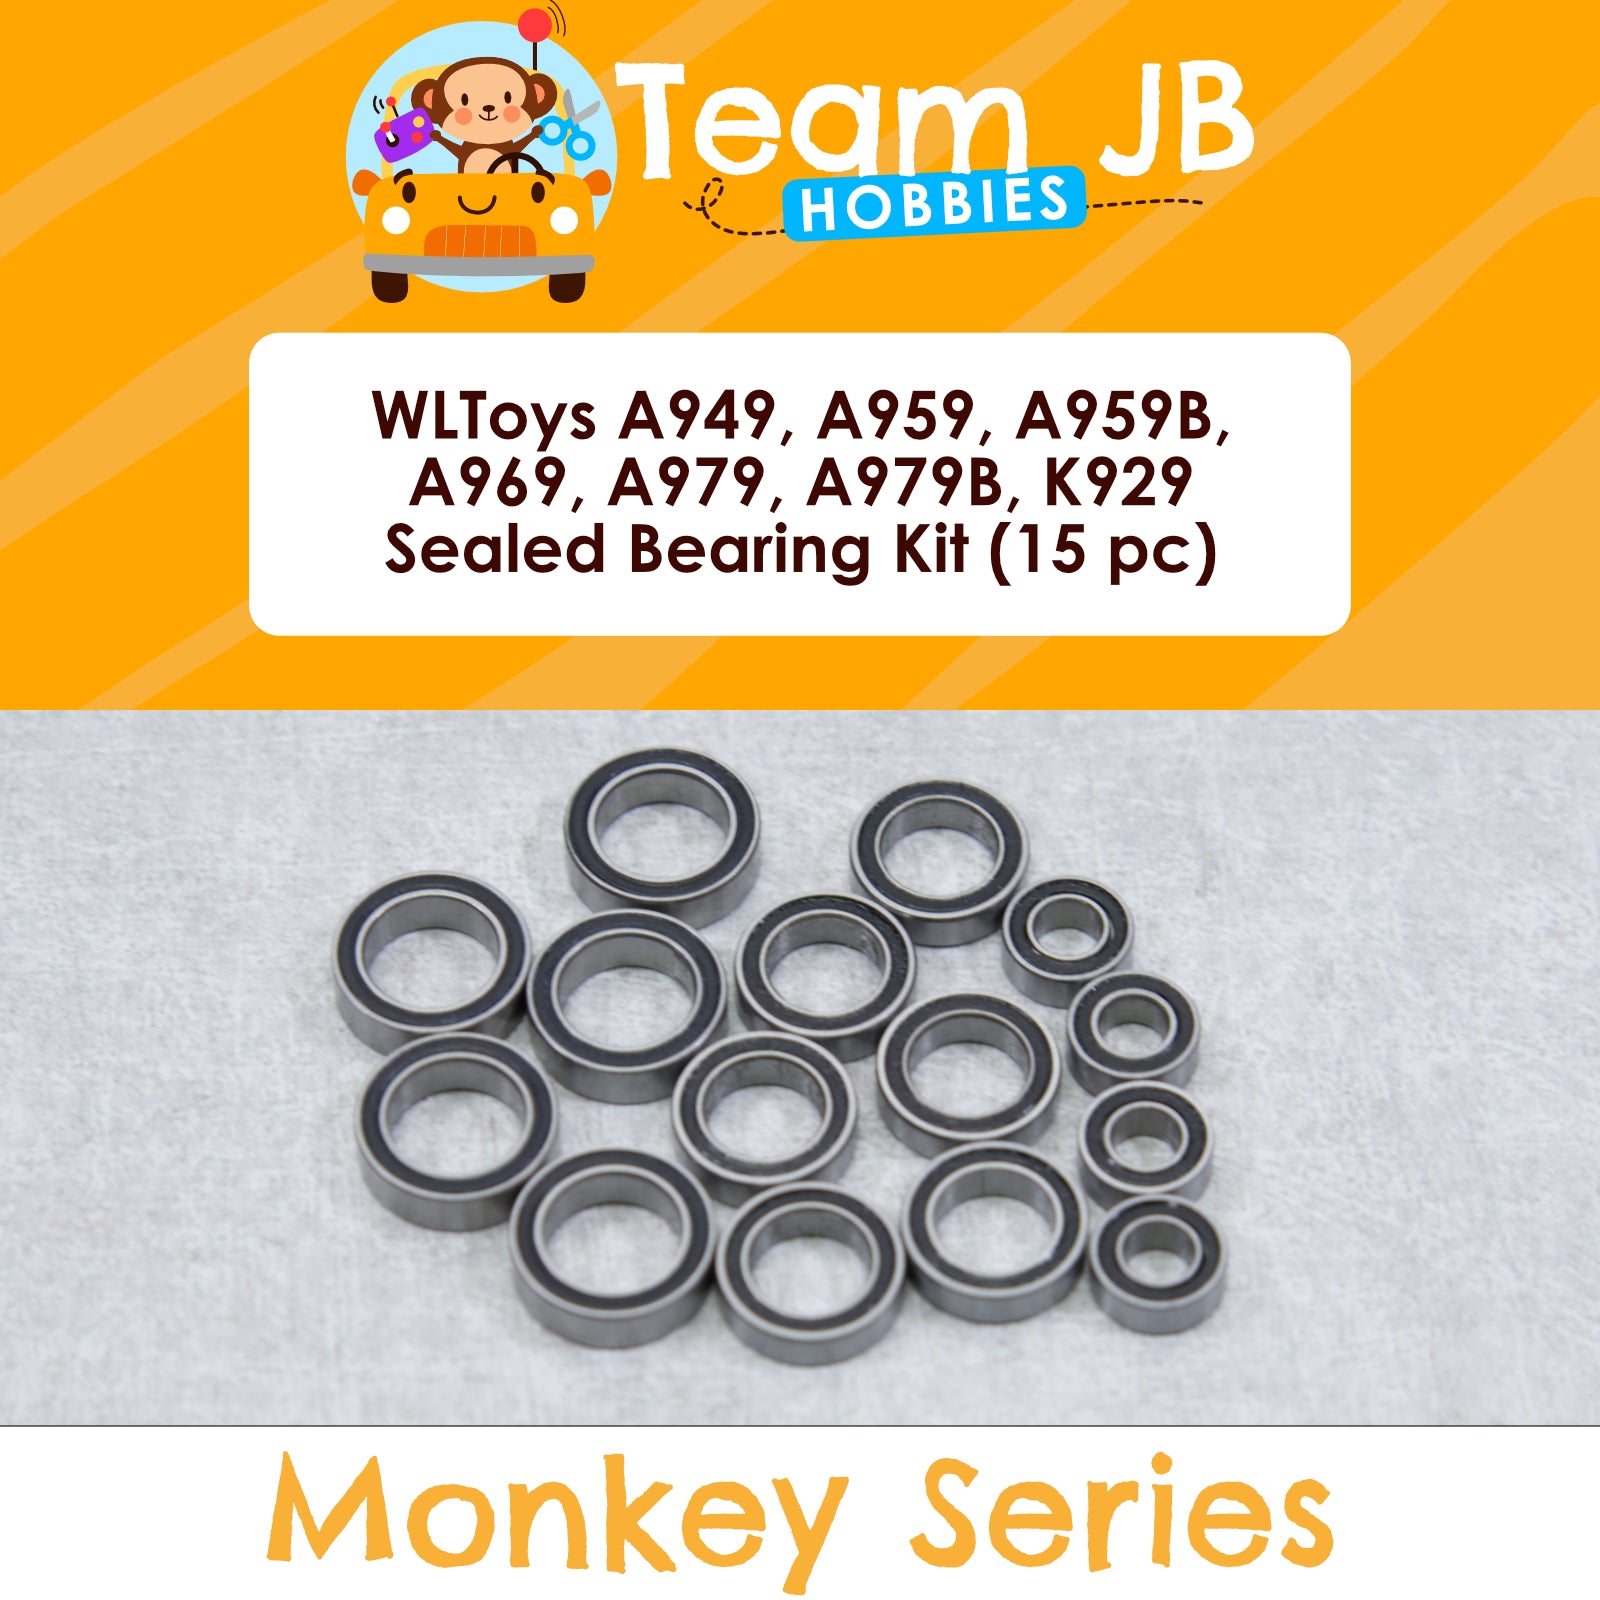 WLToys A949, A959, A959B, A969, A979, A979B, K929 Sealed Bearing Kit